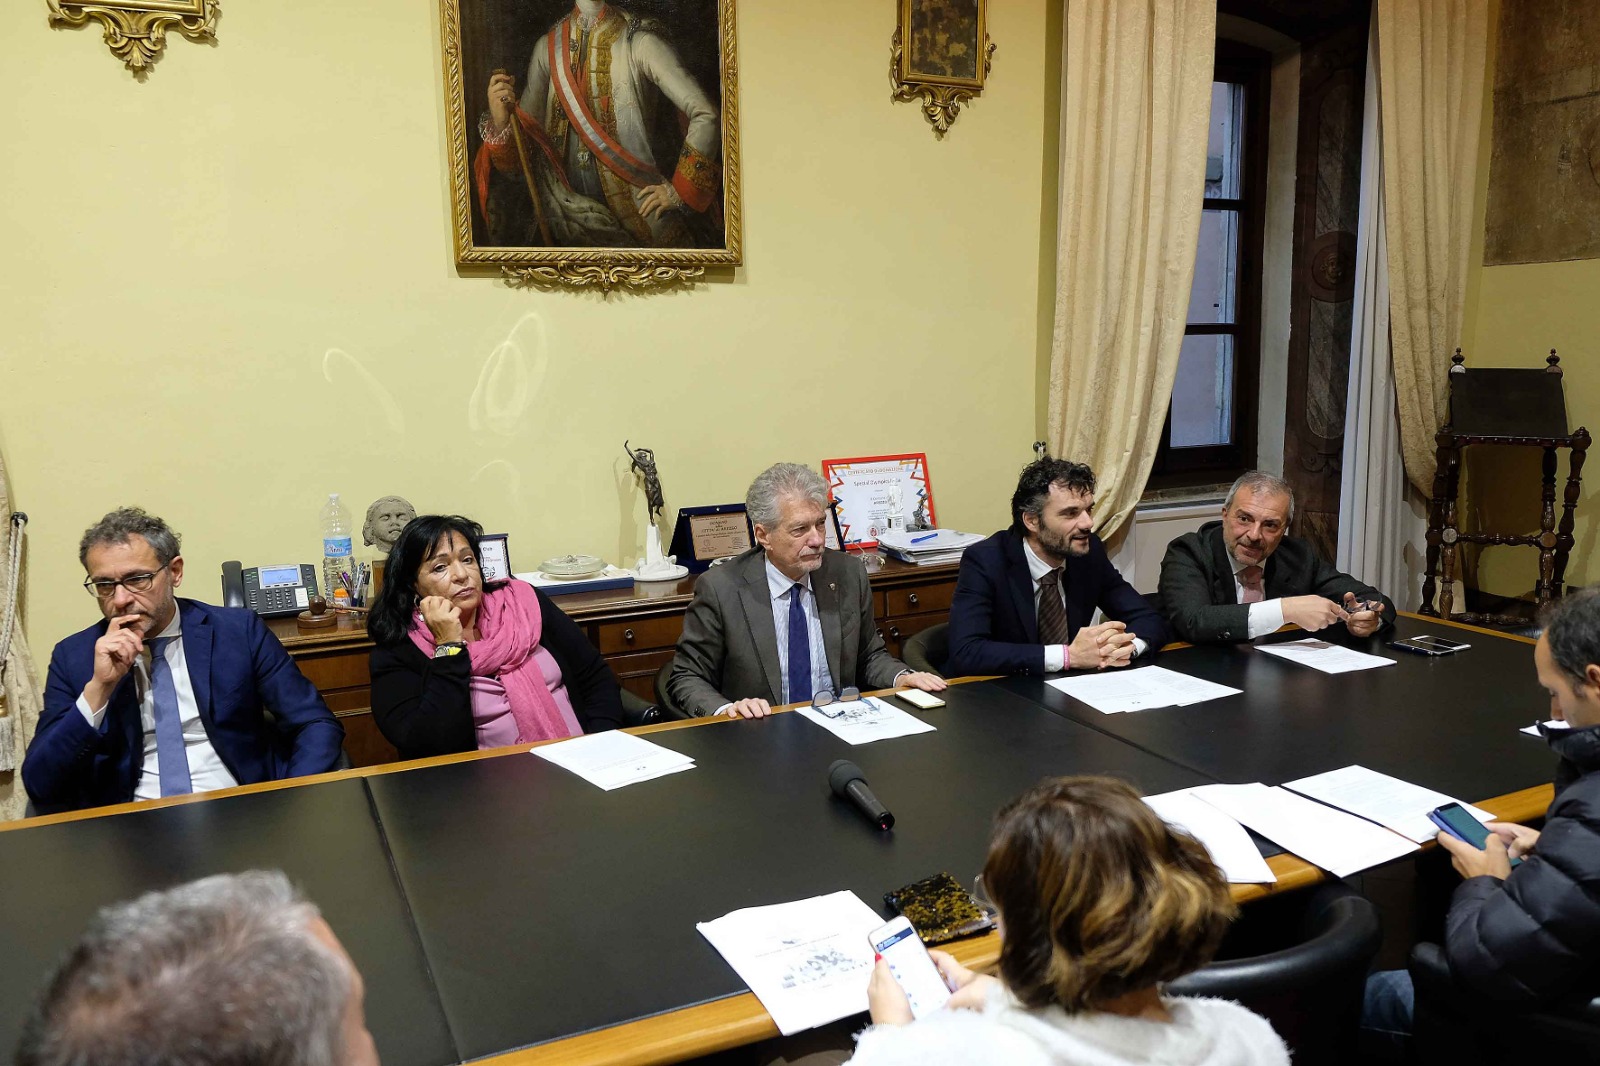 La 36esima assemblea annuale dell’Anci ad Arezzo, ne parliamo con il Sindaco Ghinelli e il Presidente Regionale Matteo Biffoni